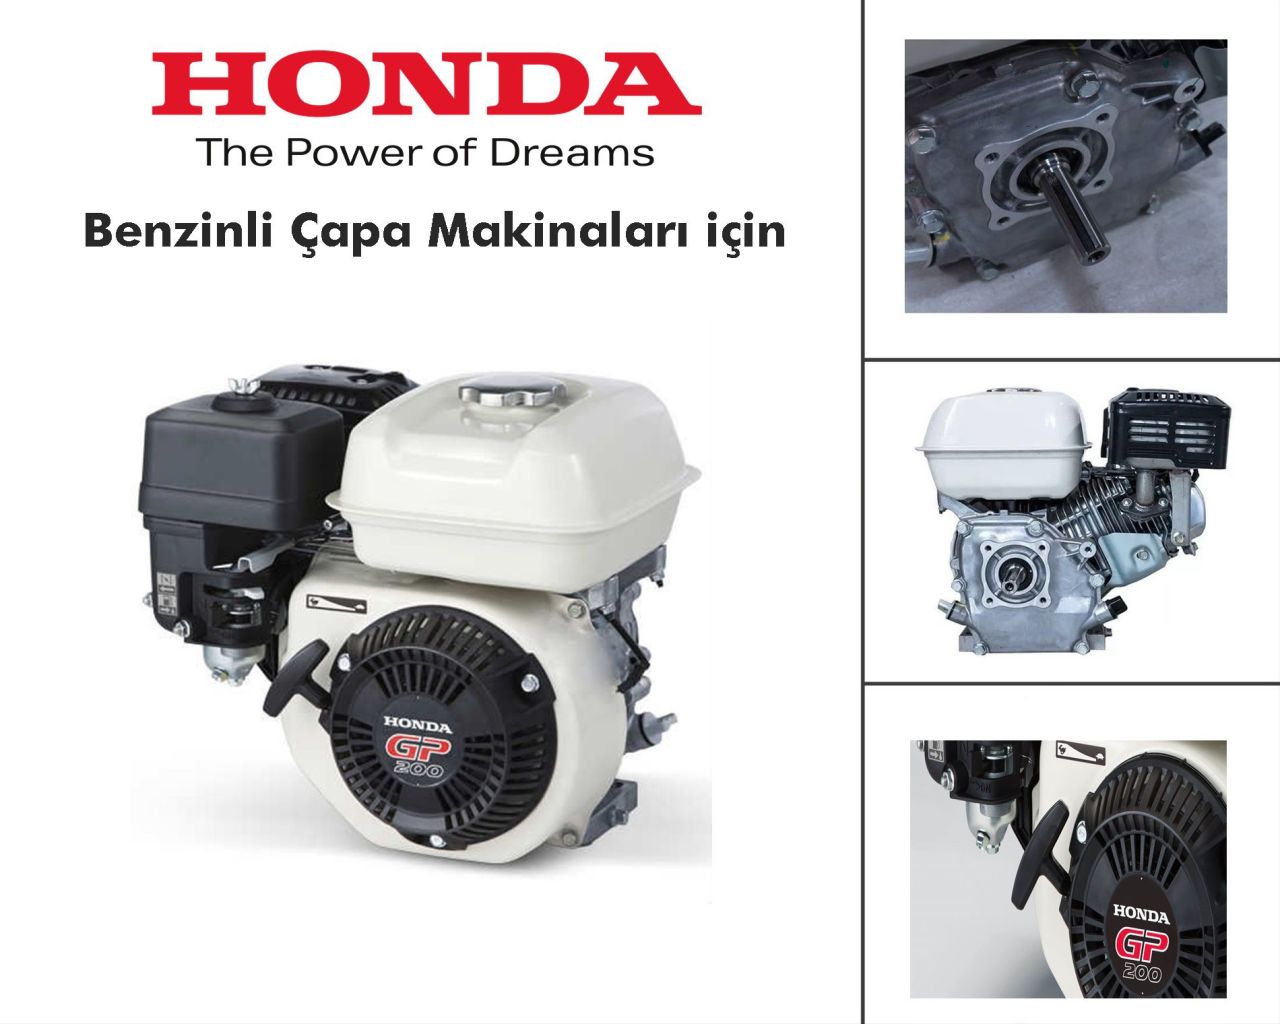 Honda GP200 Yatay Milli 6.5 Hp Motor